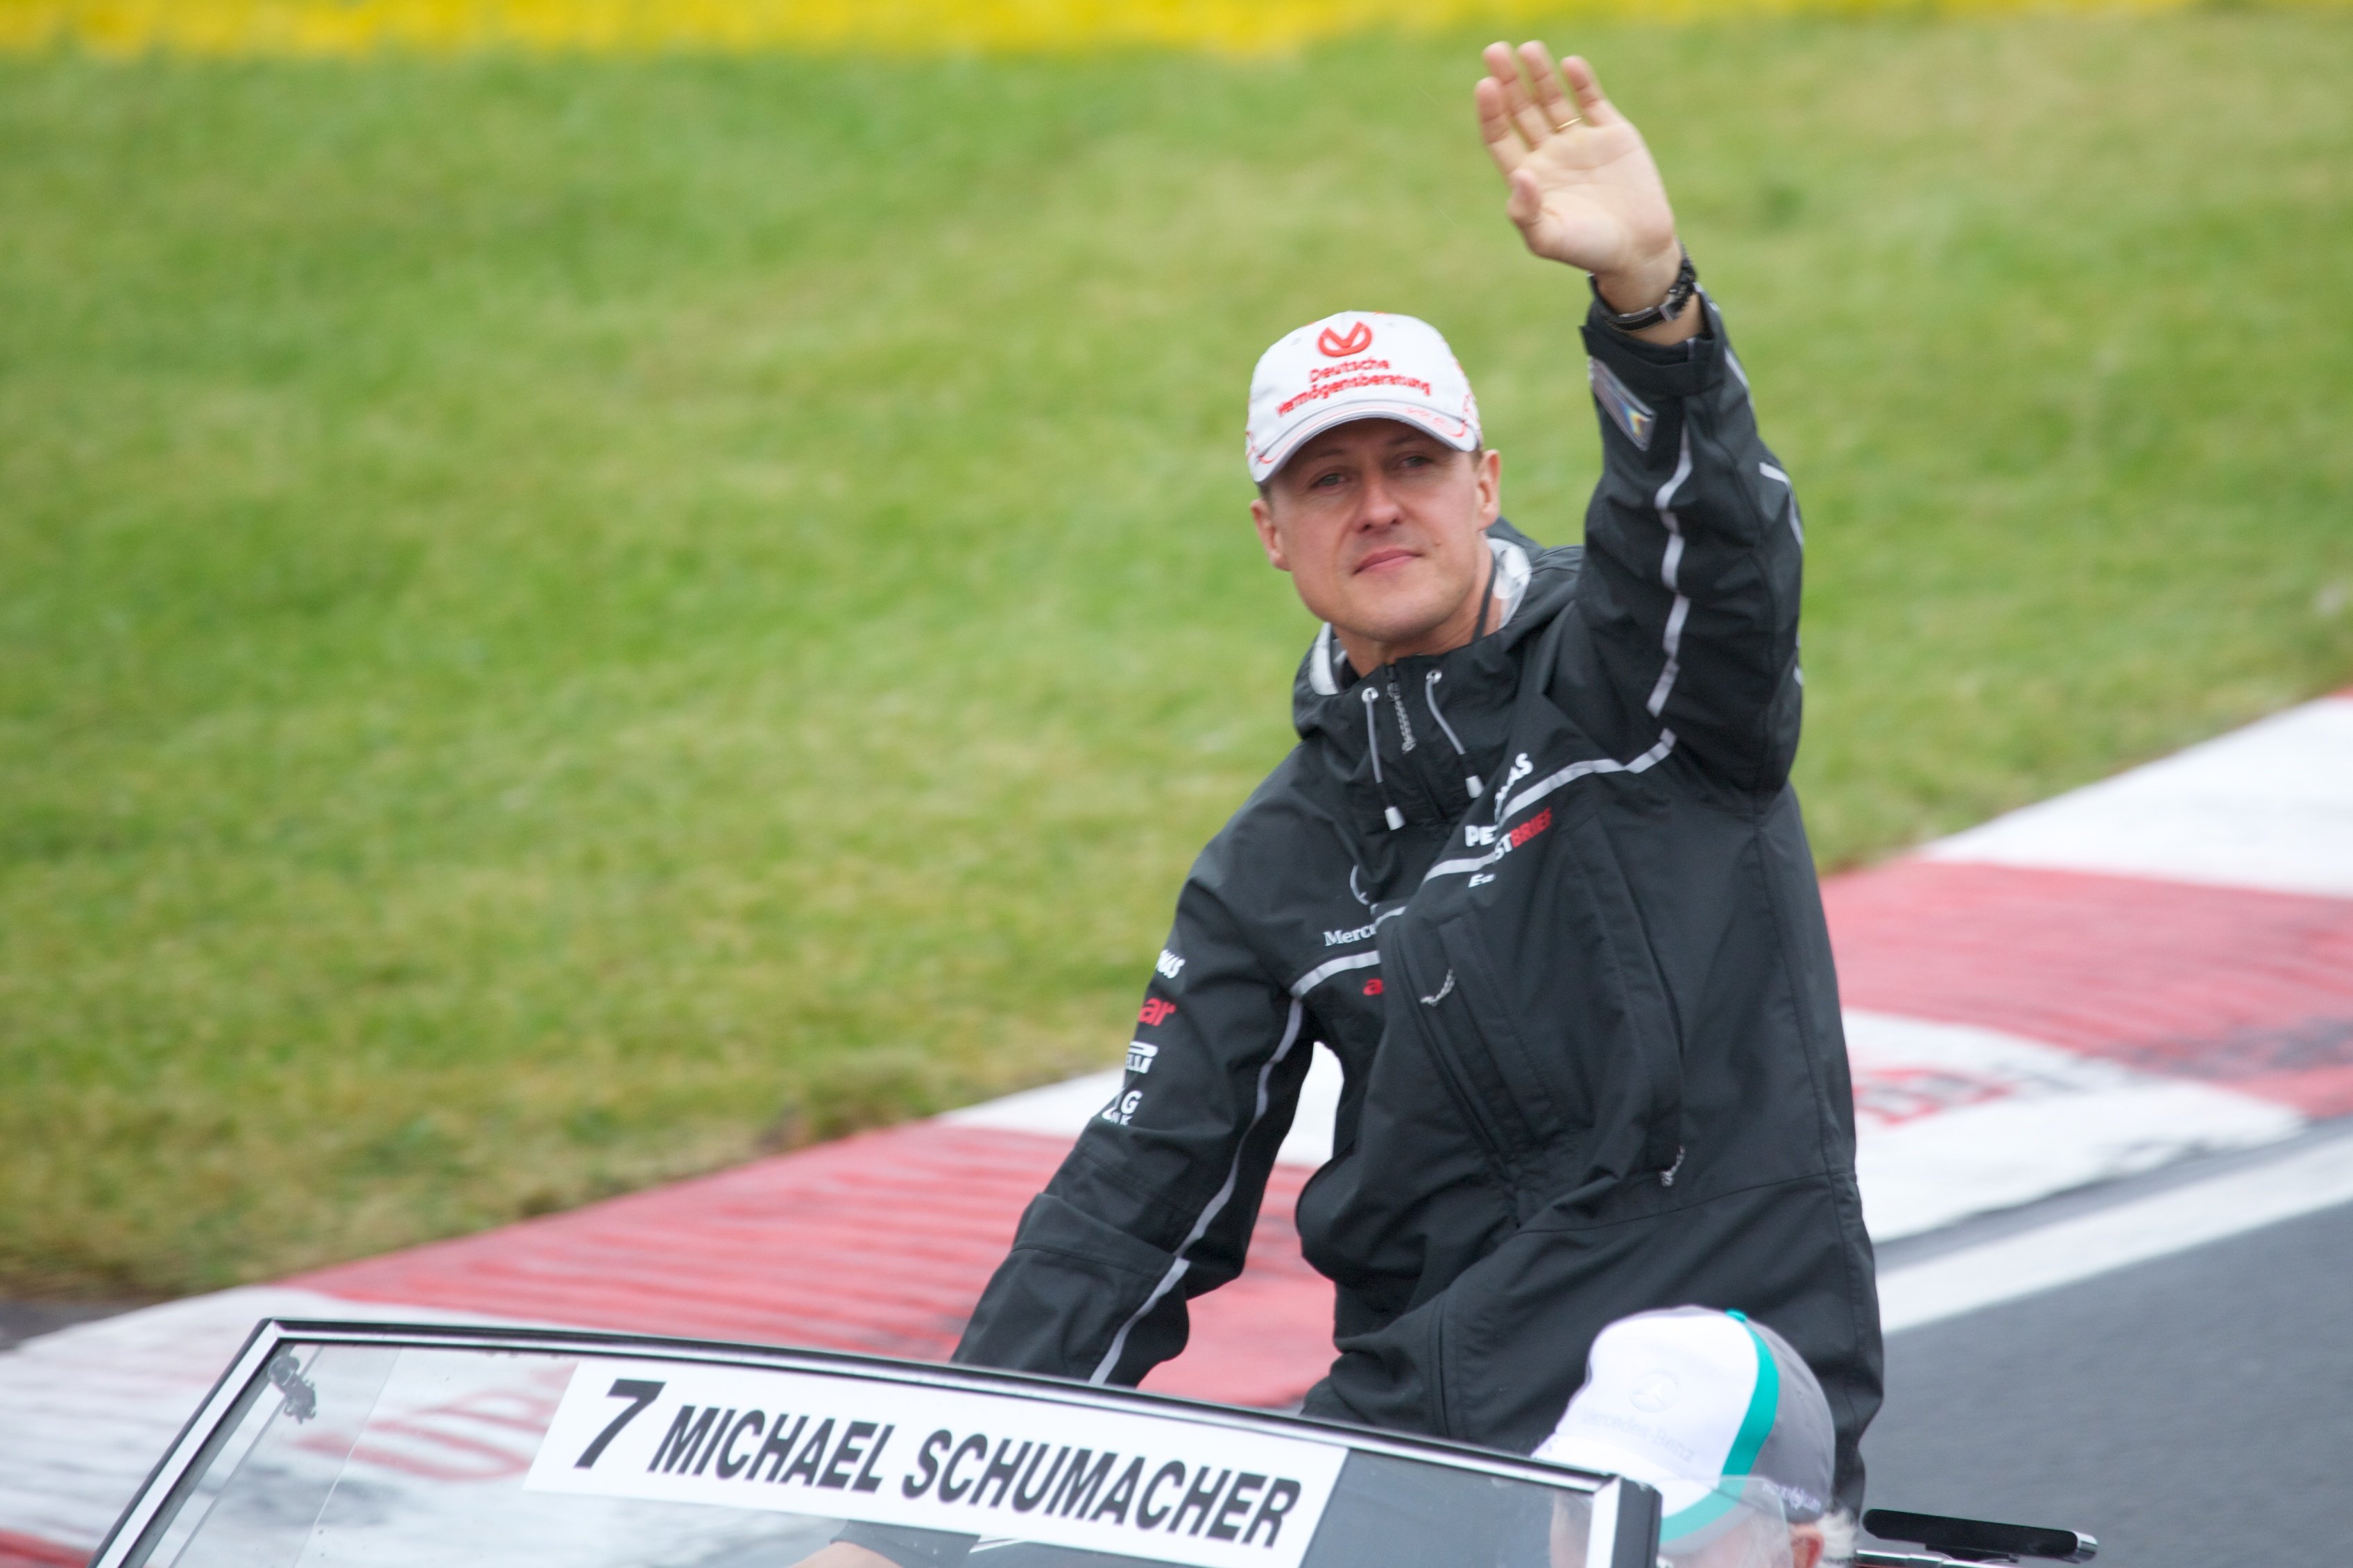 Novetats sobre l'estat de salut de Schumacher: "Està molt deteriorat"